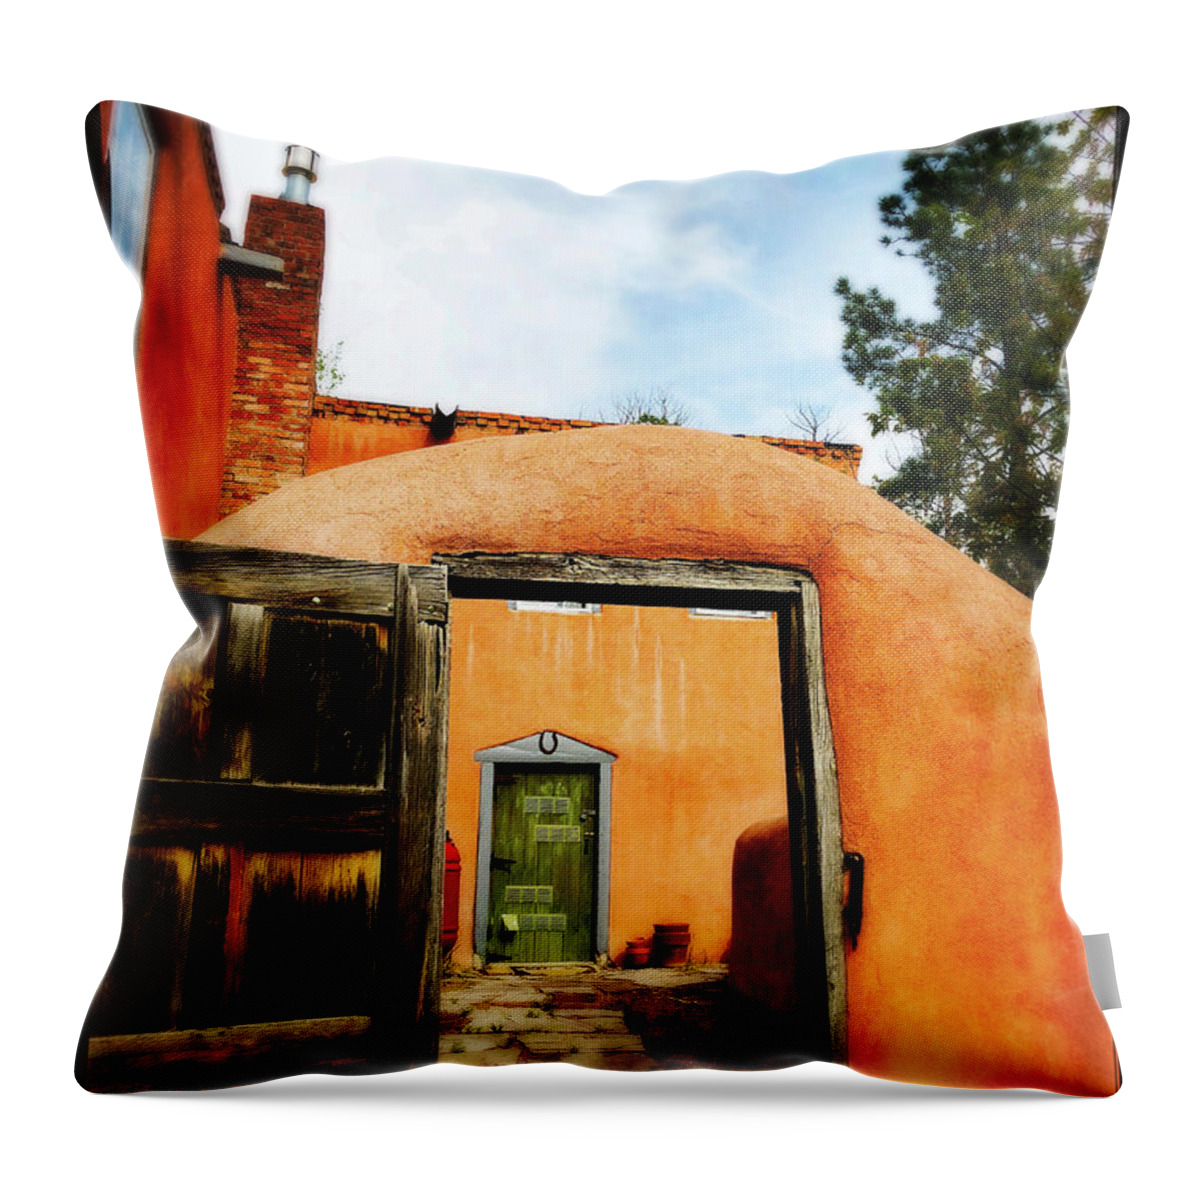 Copyright Elixir Images Throw Pillow featuring the photograph Adobe Door Santa Fe by Santa Fe